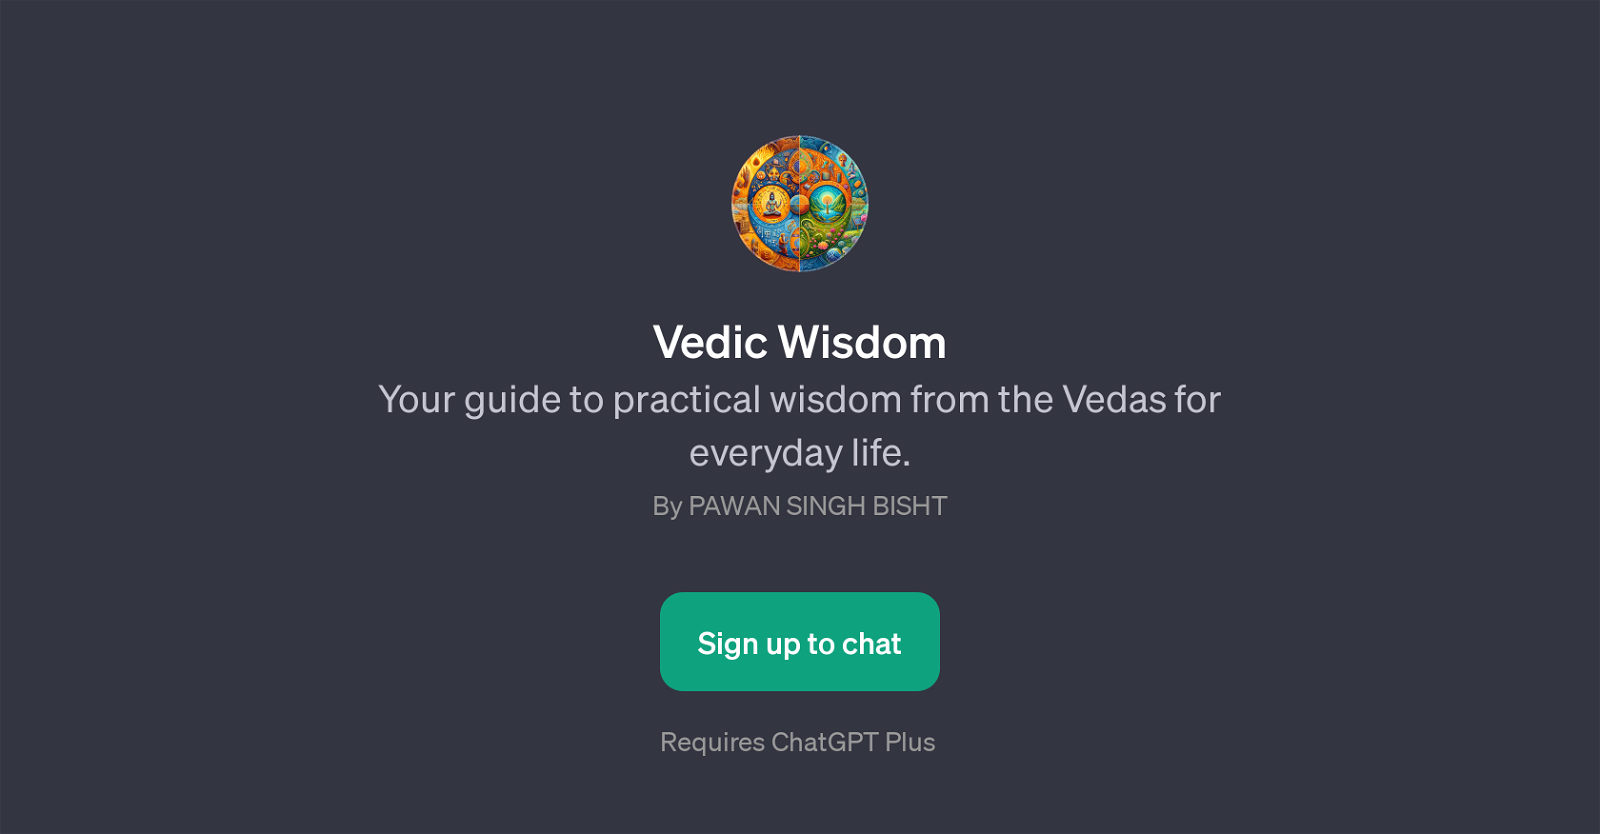 Vedic Wisdom website